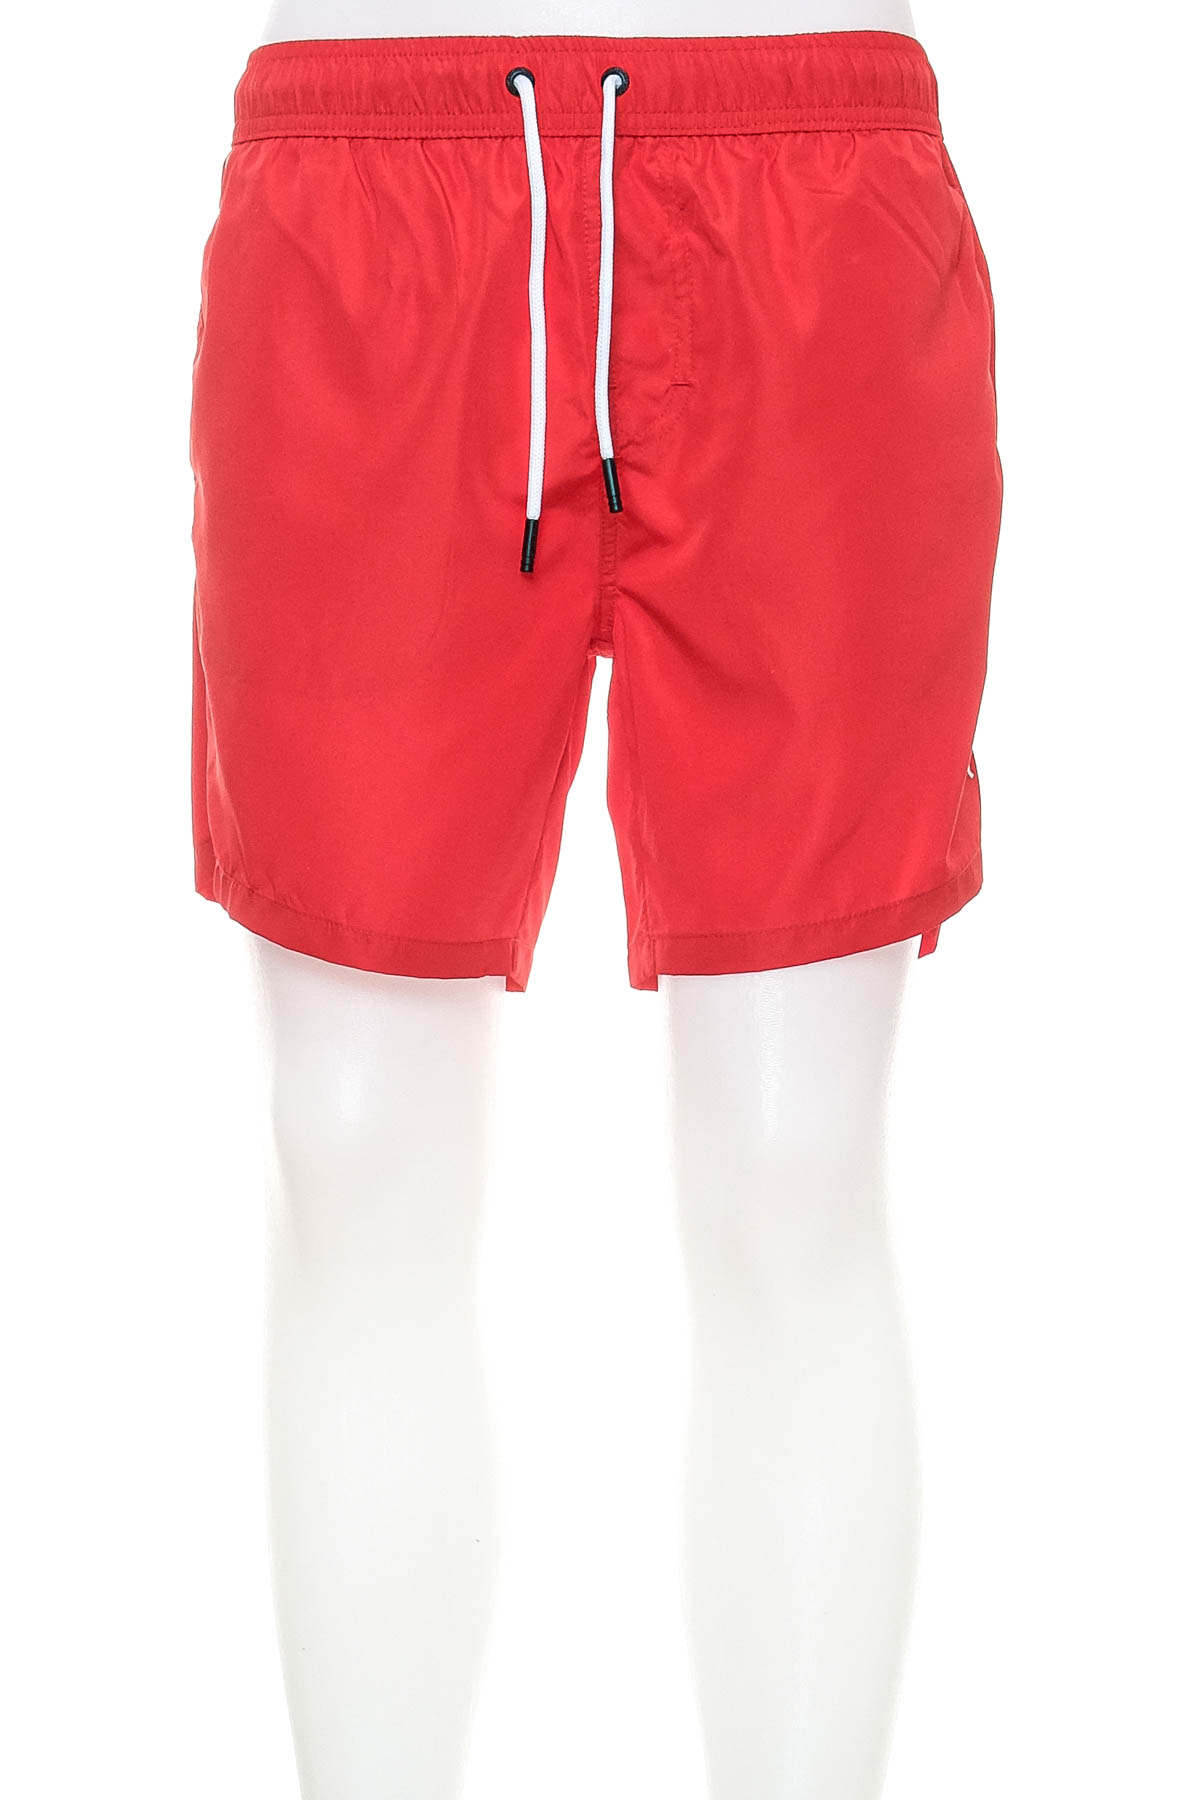 Men's shorts - Bikkembergs - 0